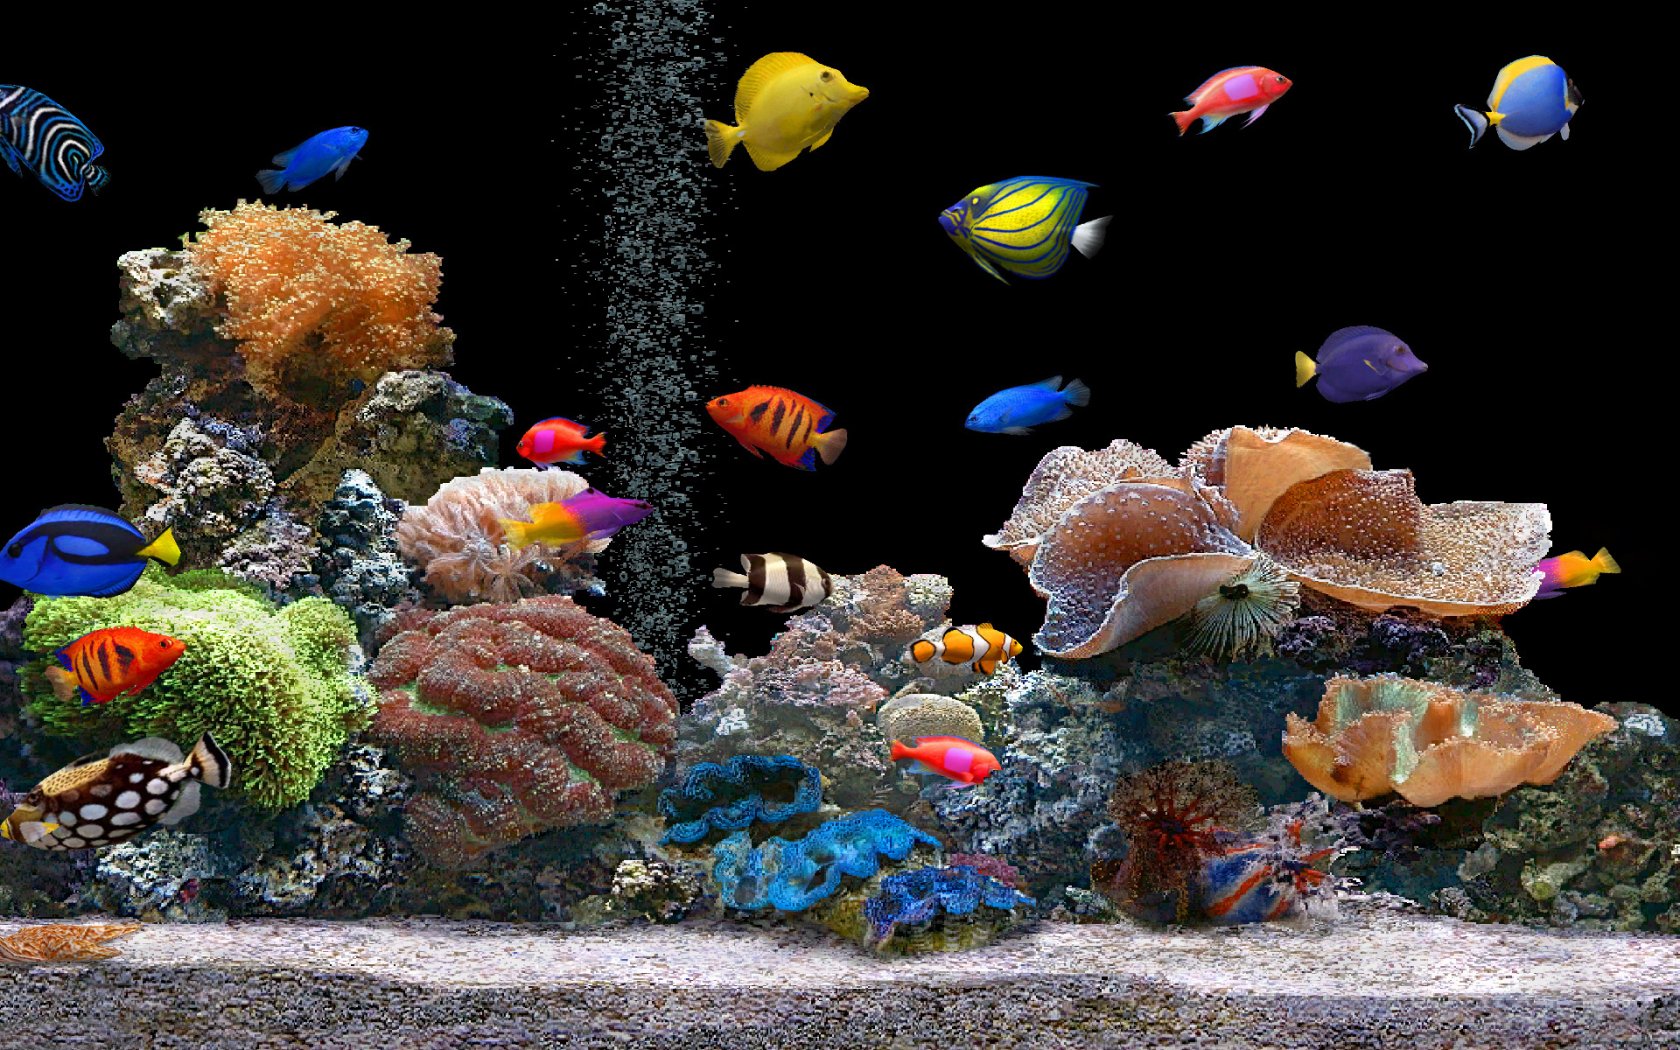 48+] Aquarium Desktop Wallpaper Free - WallpaperSafari